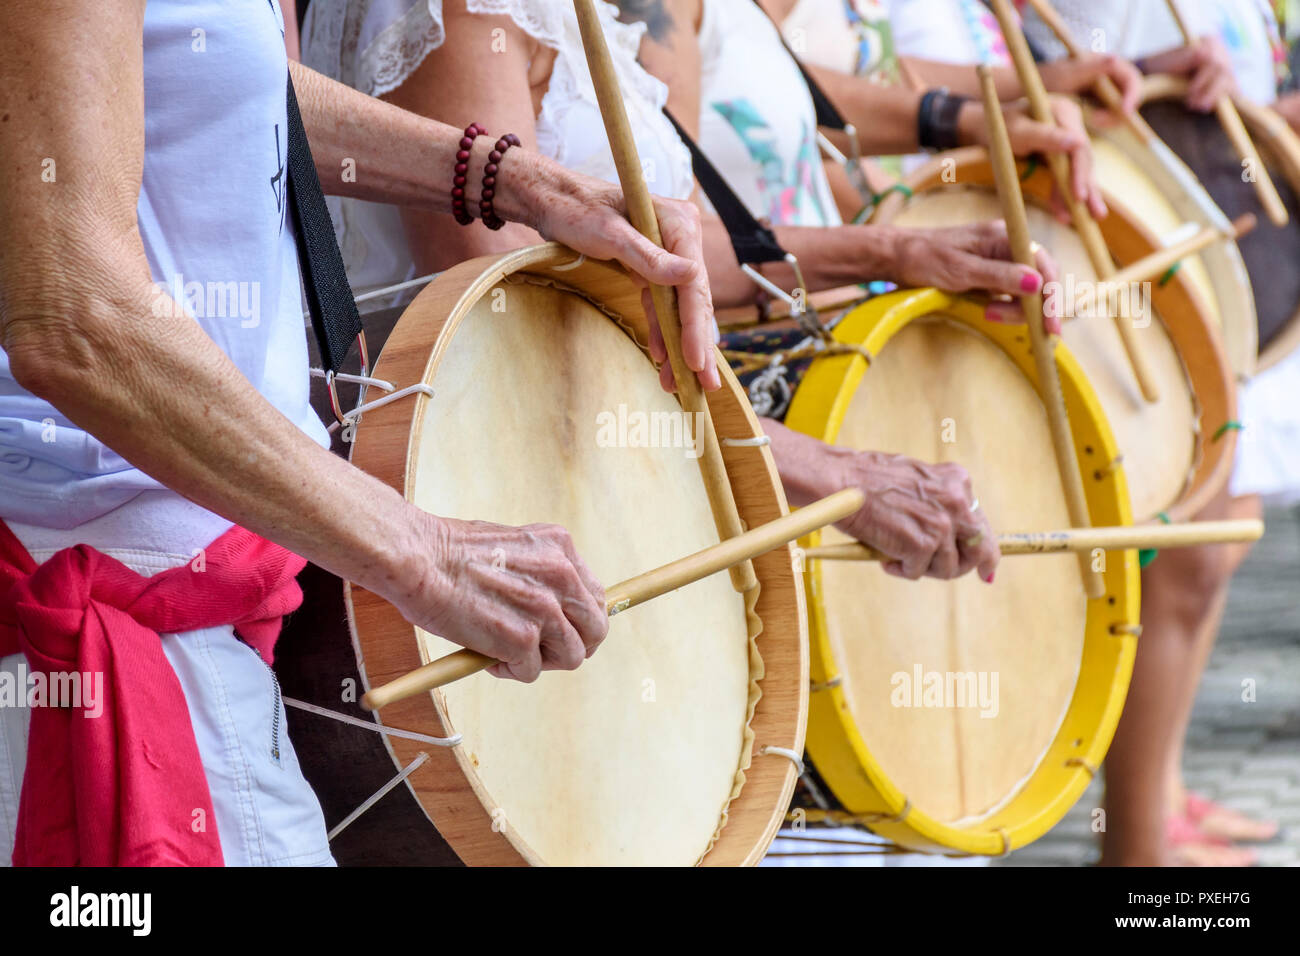 Les percussionnistes de womans à jouer de la batterie au cours de samba sur performance folklorique Belo Horizonte, Minas Gerais Banque D'Images